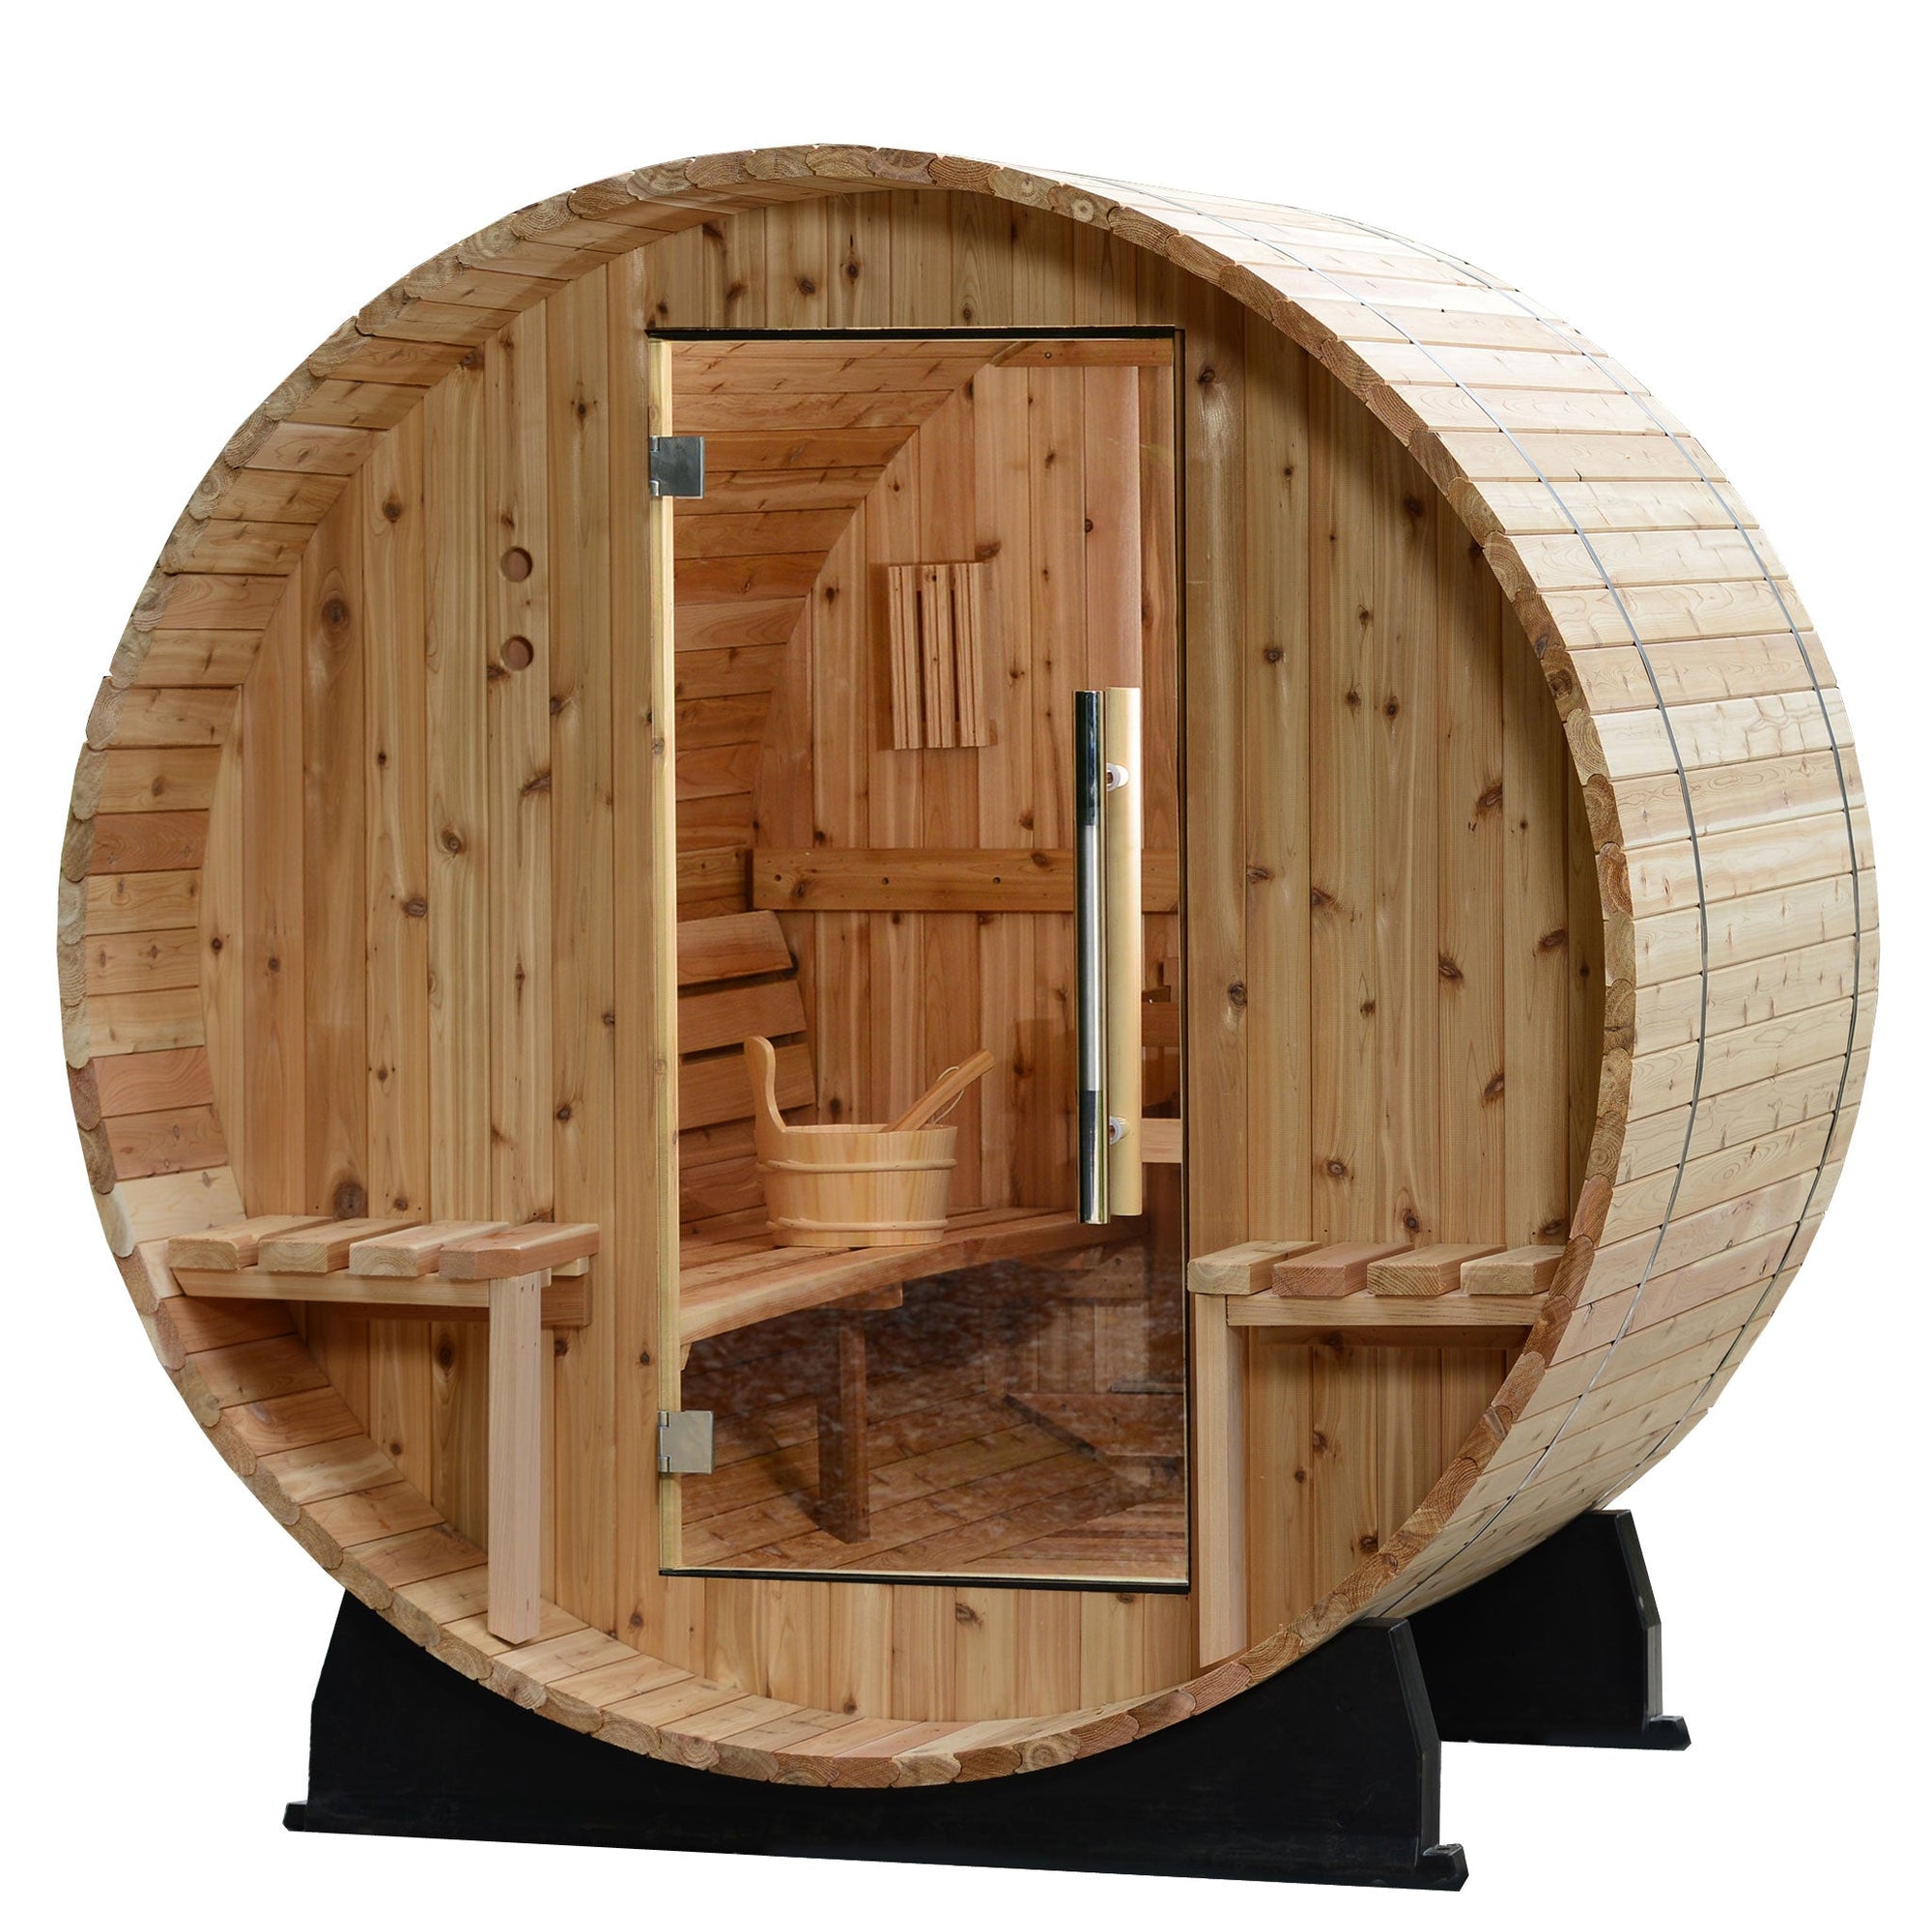 Almost Heaven Vienna 2-Person Canopy Barrel Sauna-Traditional Saunas-Nordica Sauna